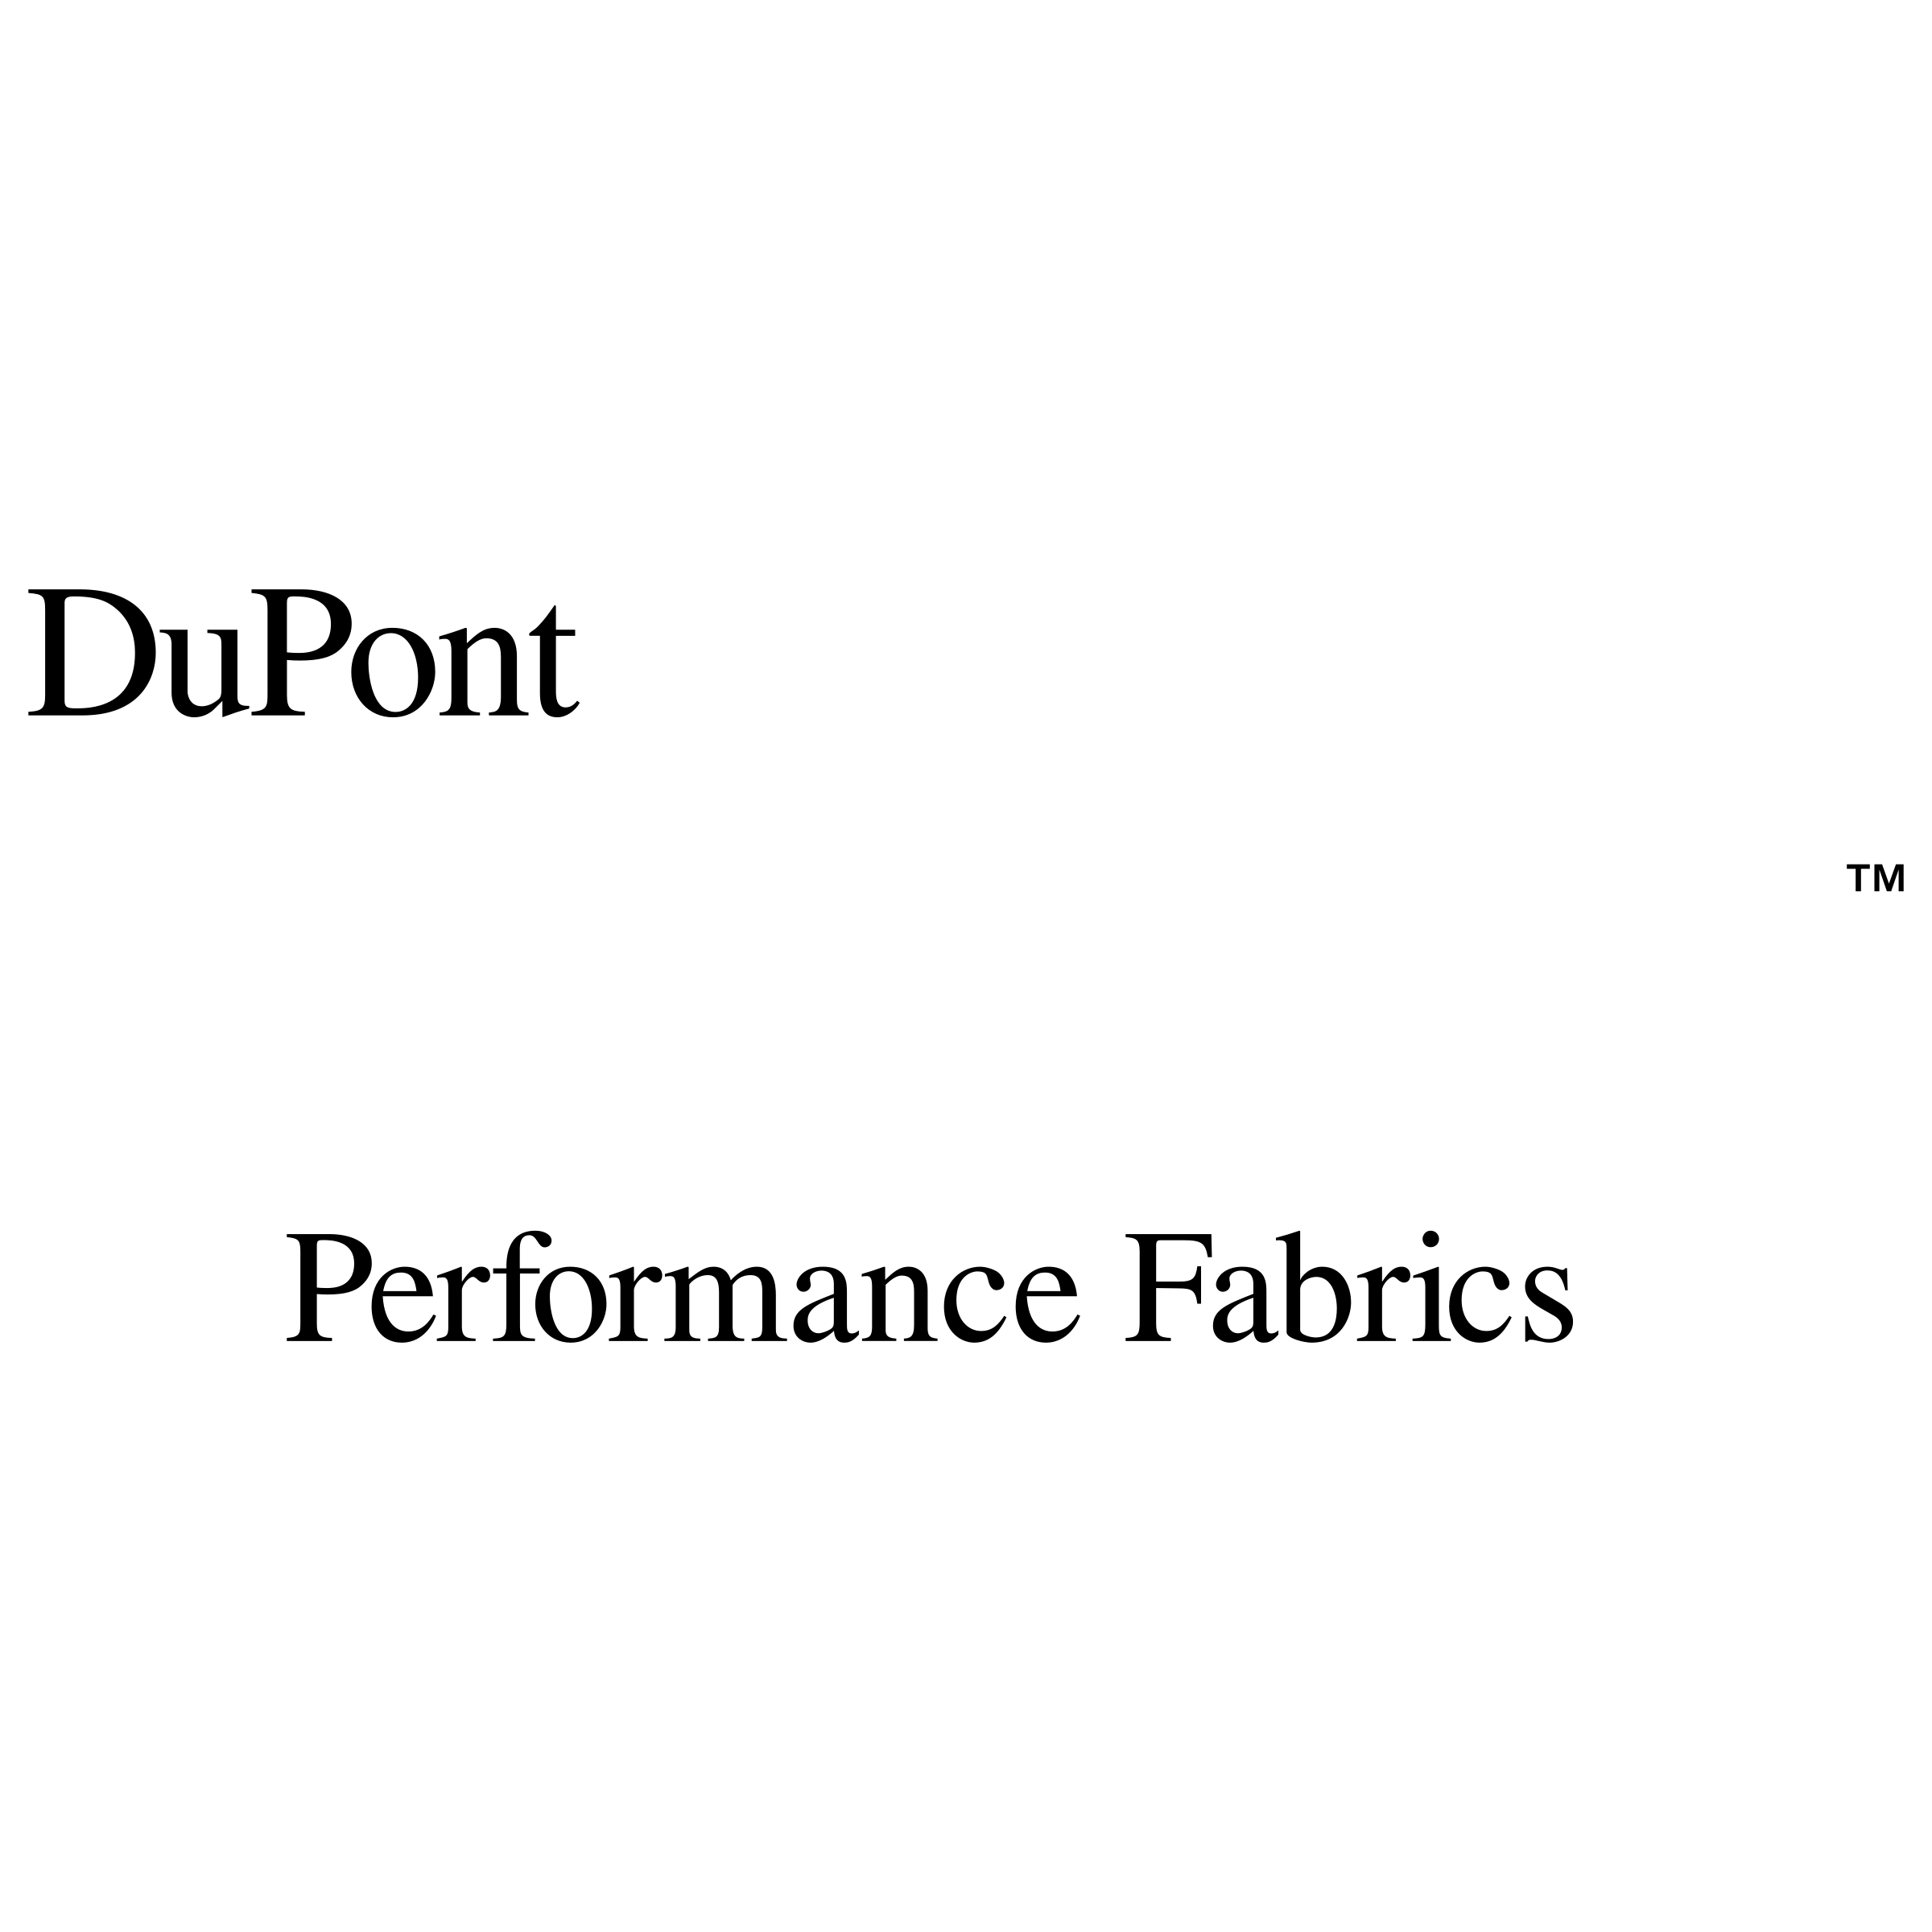 Coolmax Logo - Du Pont CoolMax Logo PNG Transparent & SVG Vector - Freebie Supply